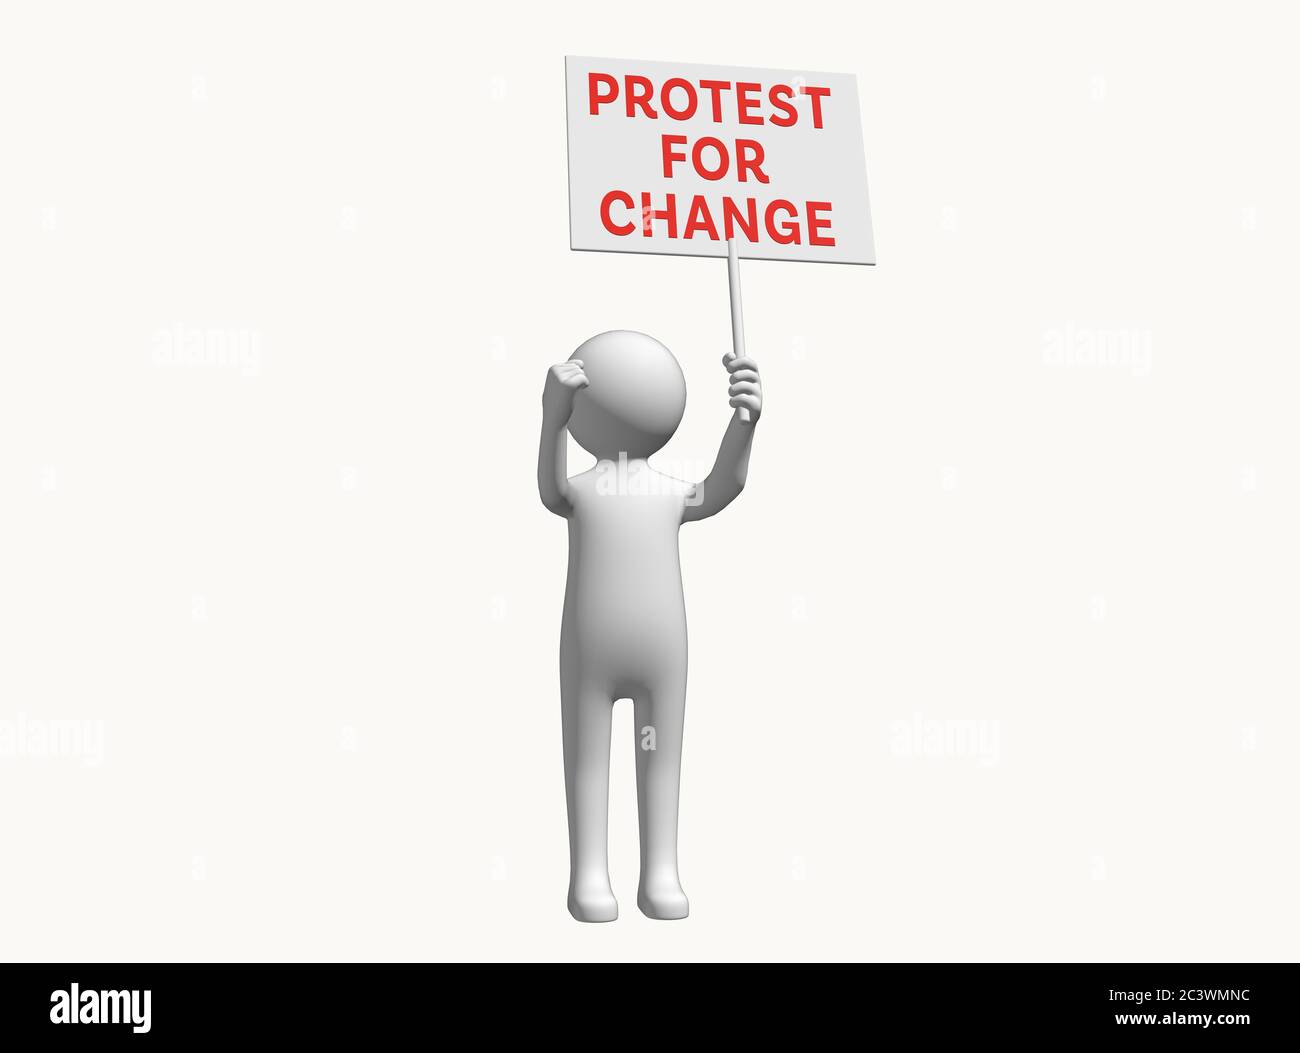 Personnage 3D anonyme avec signe de protestation pour le changement Banque D'Images